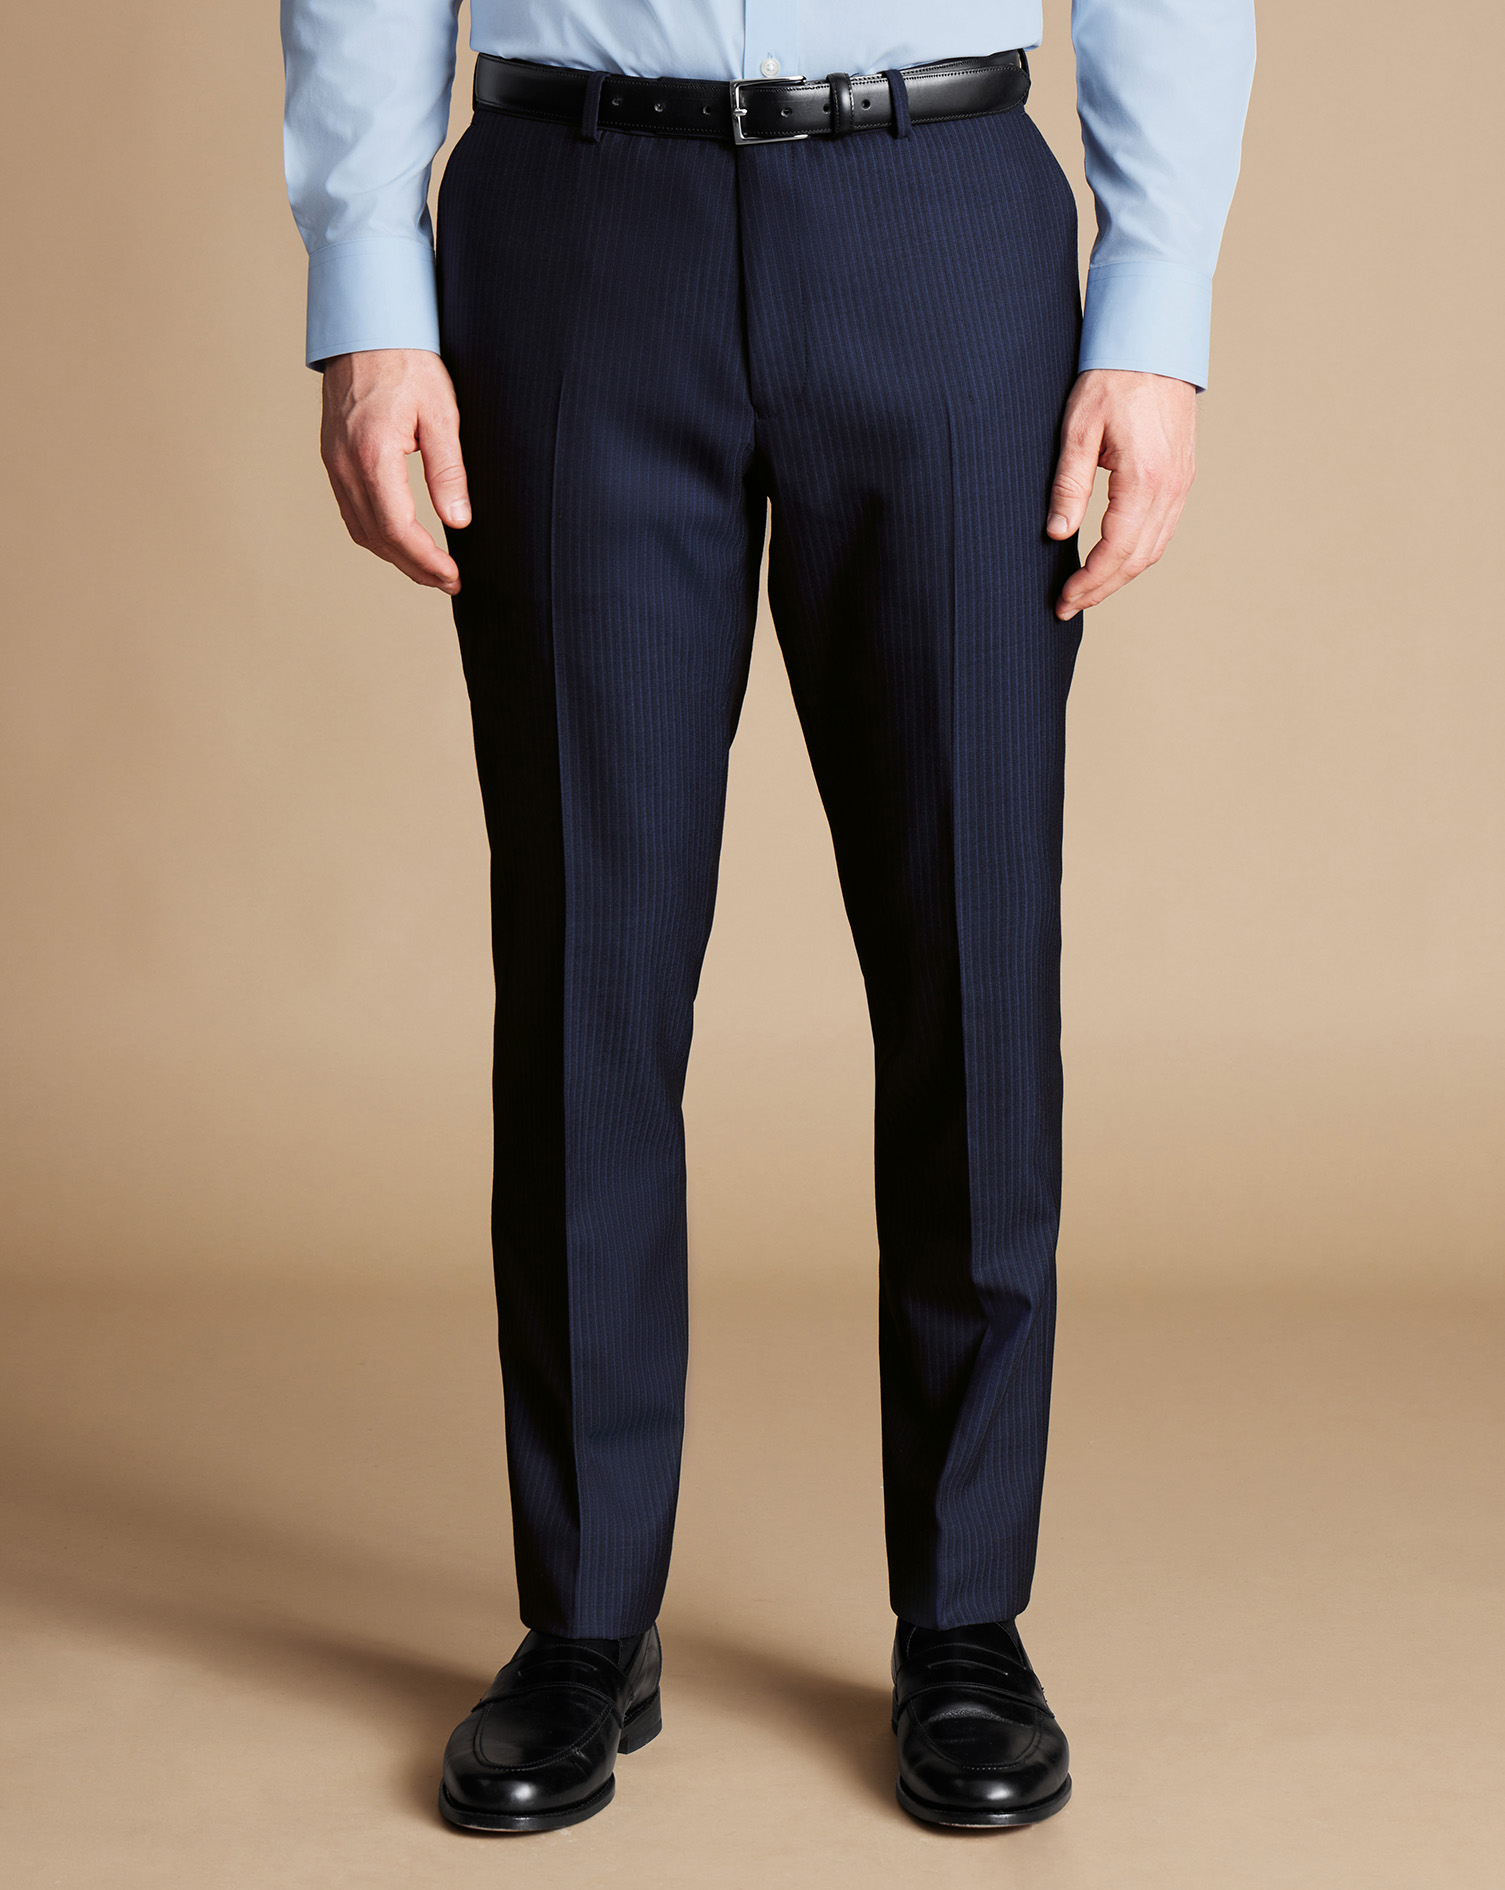 Men's Charles Tyrwhitt Stripe Suit Trousers - Navy Size 40/32
